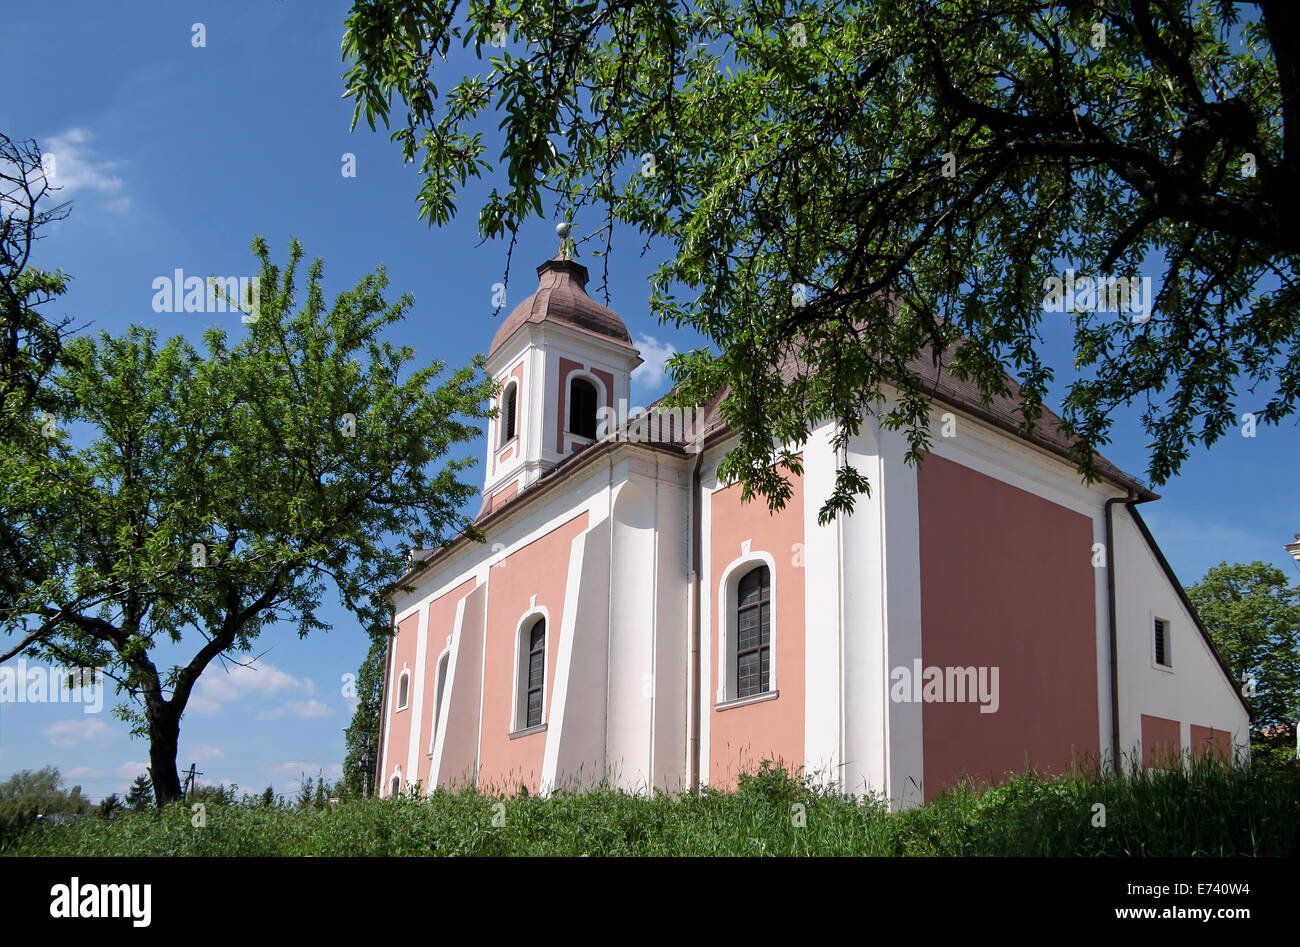 Batatonalmadi village church near Lake Balaton, Hungary Stock Photo